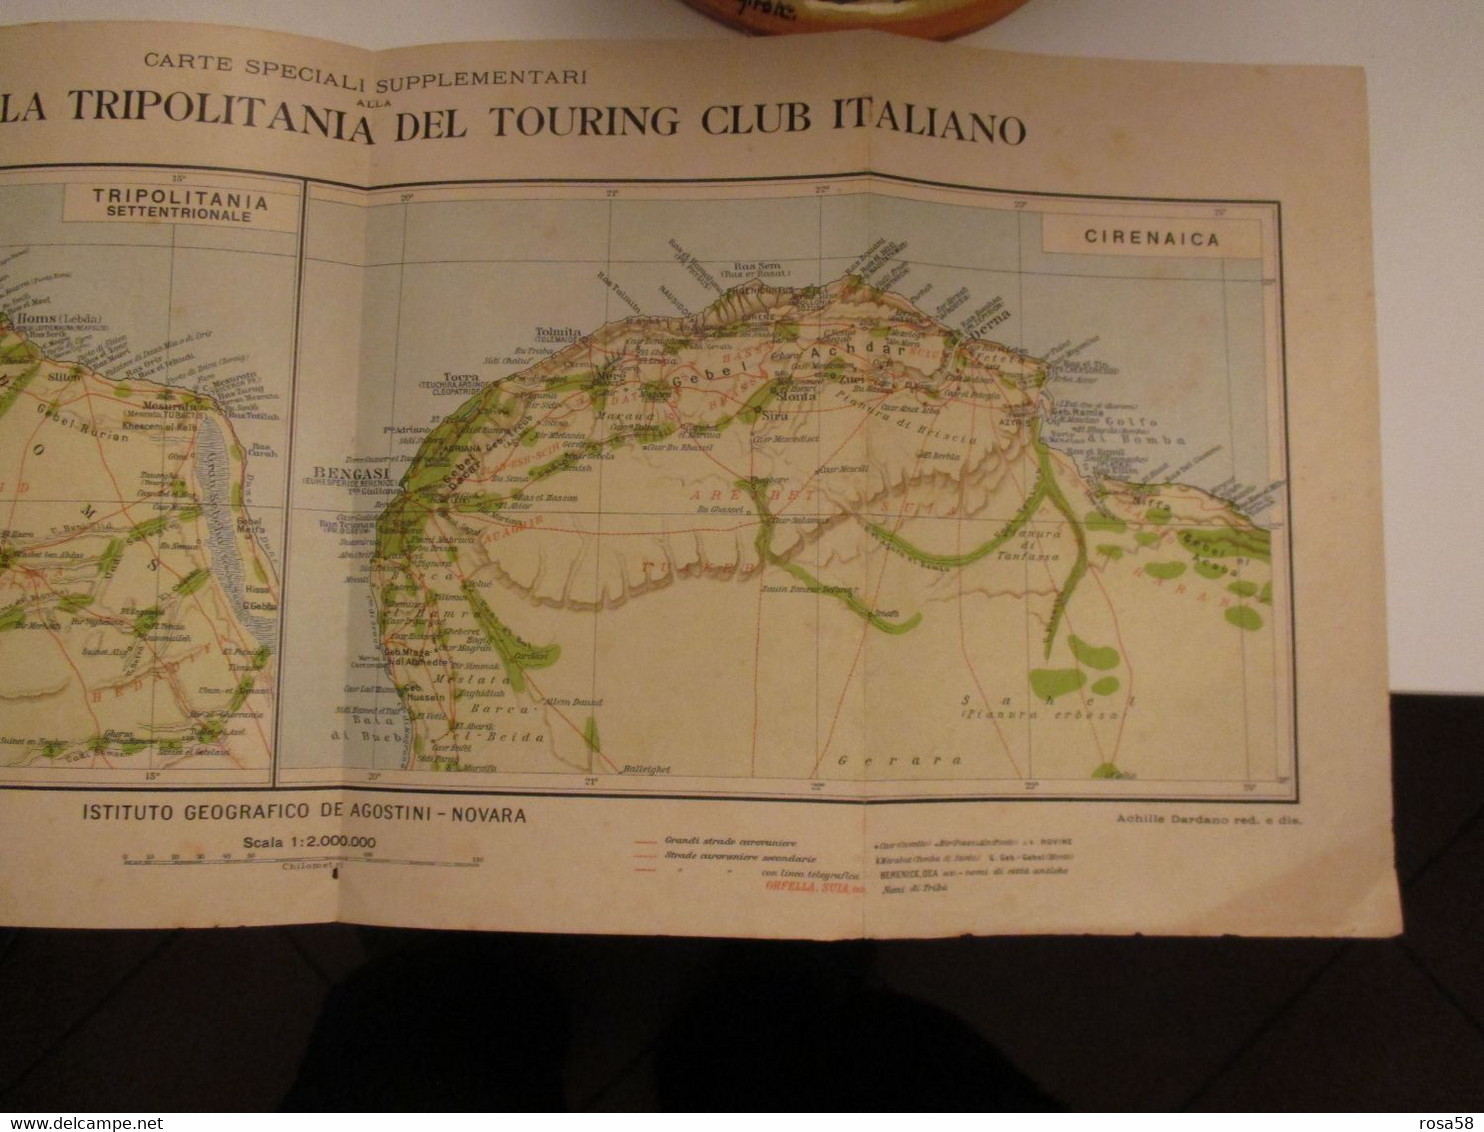 AFRICA Libia Carta Geografica Edizione DE AGOSTINI Novara  Cirenaica Tripolitania Touring Club Italiano Coloinie Italian - Monde